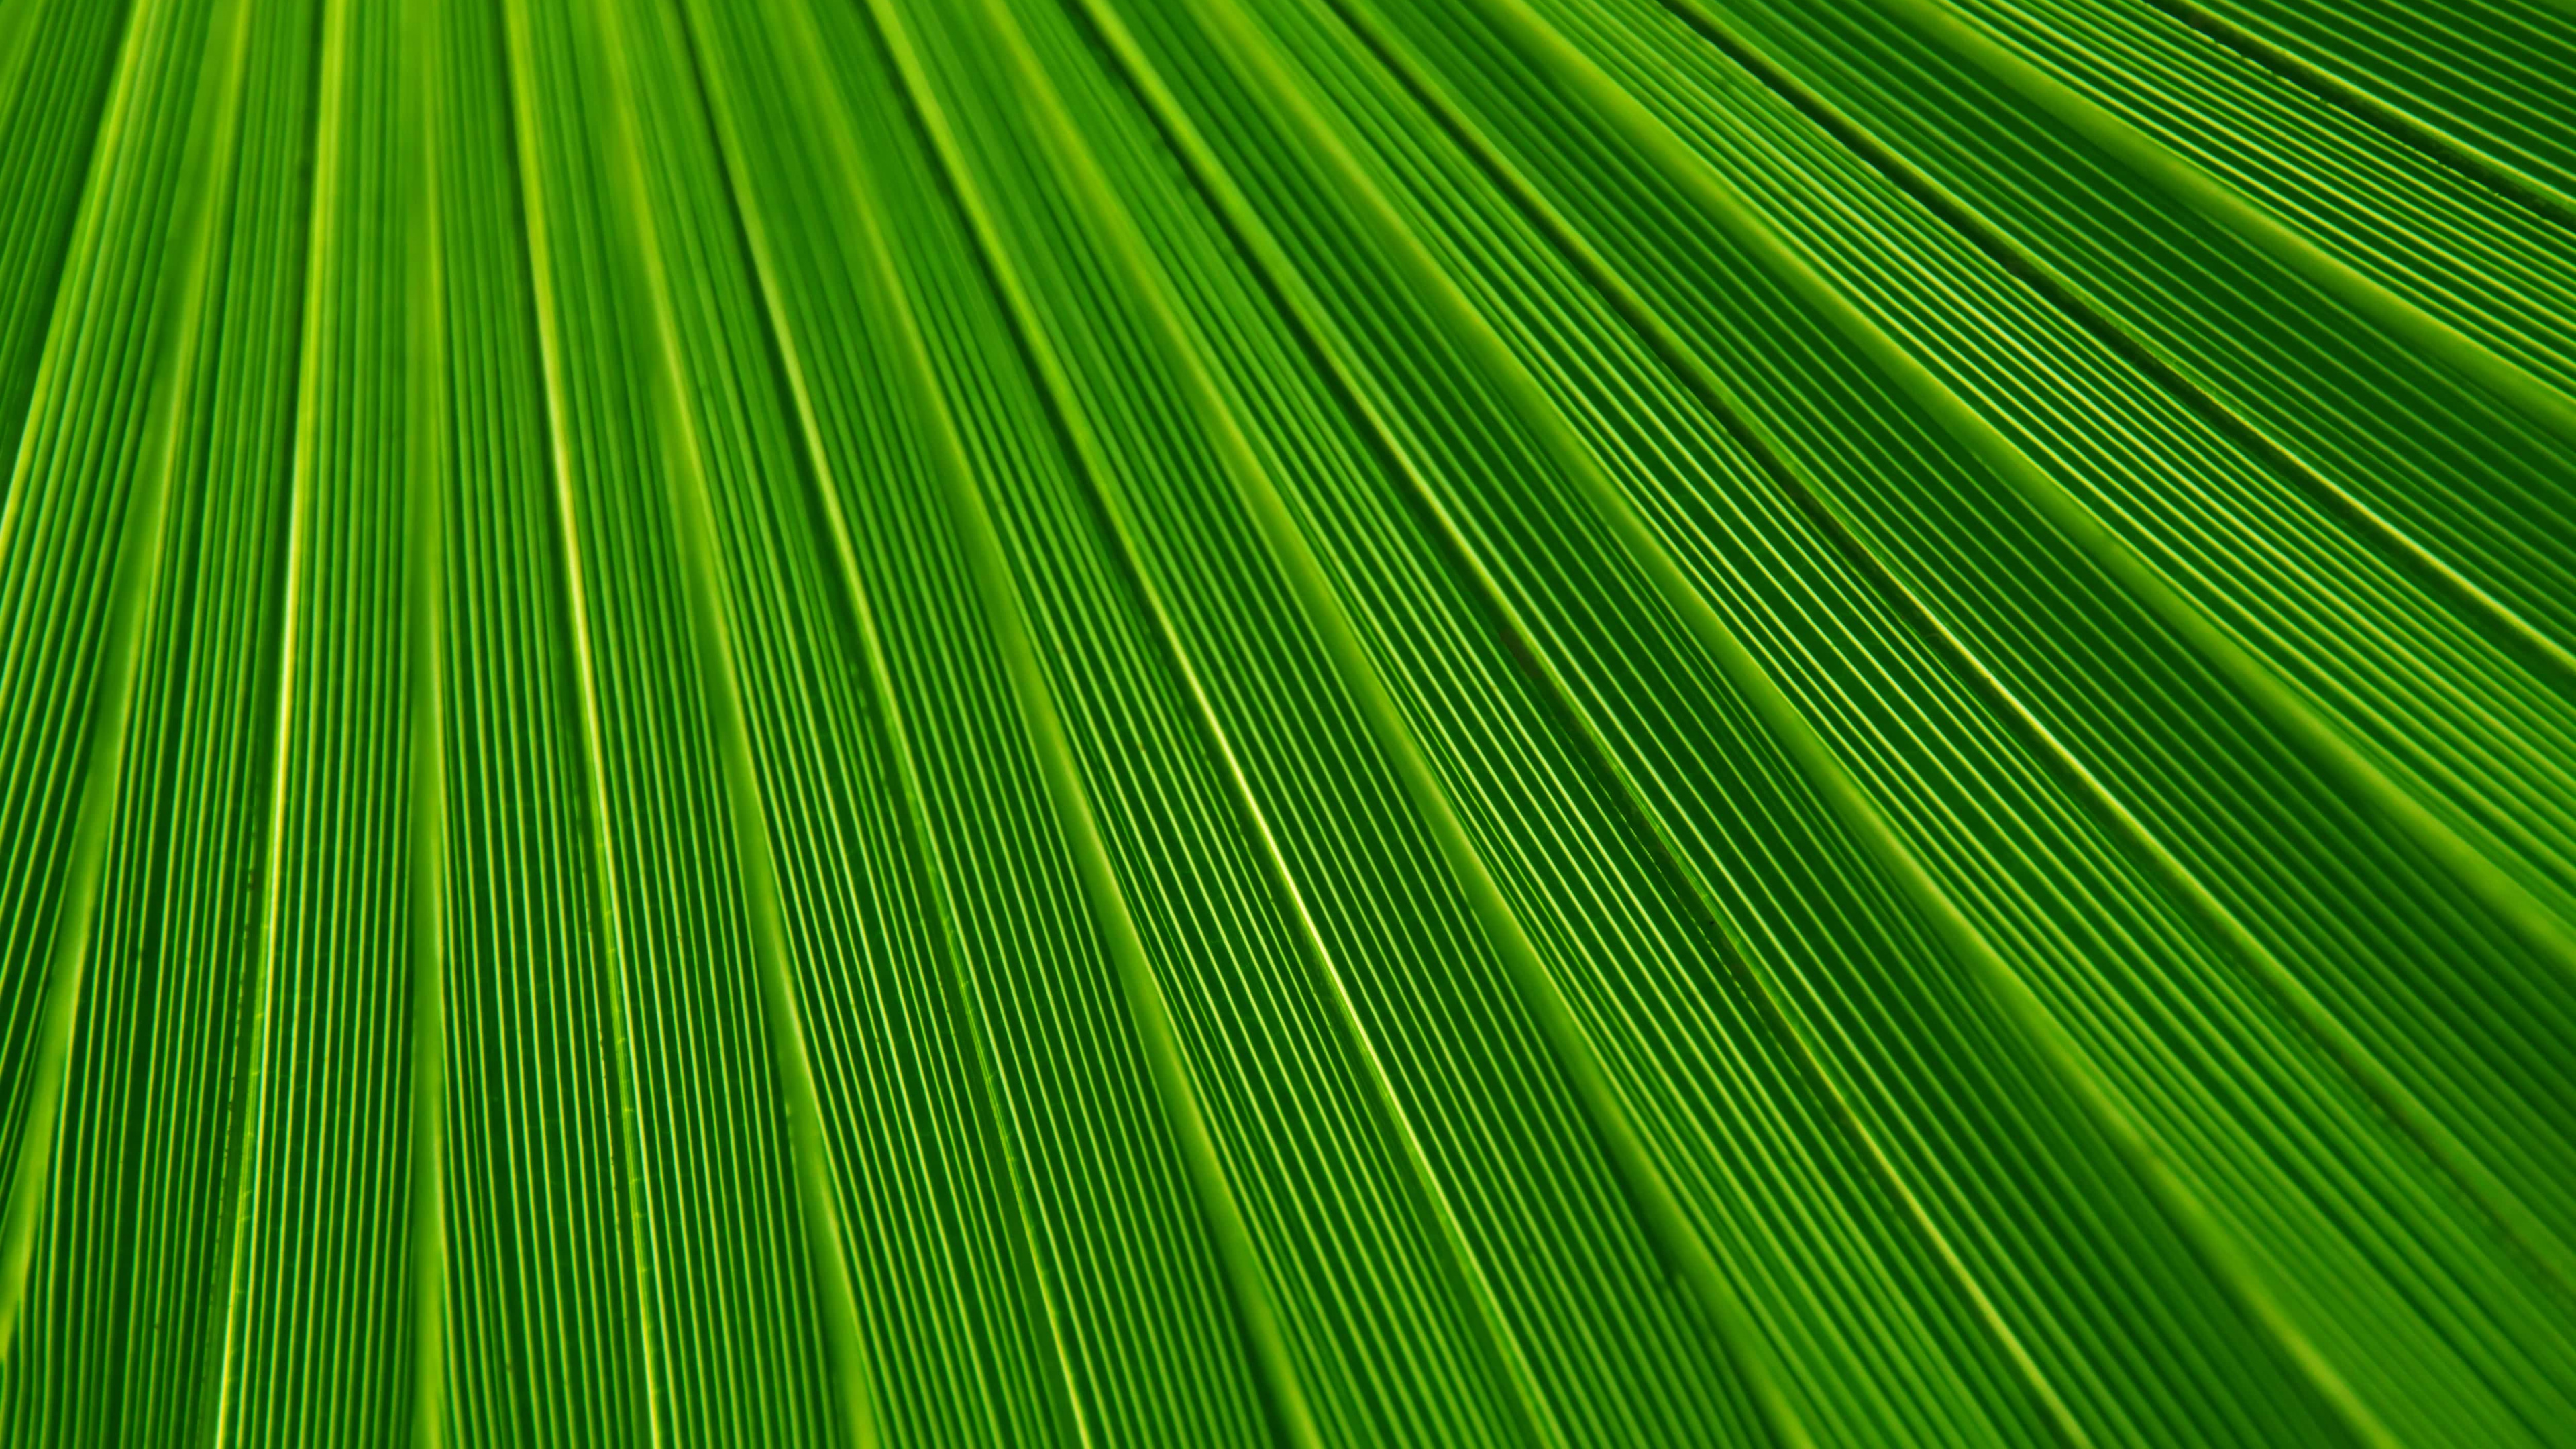 棕榈树, 纹理, 绿色的, 草, 草家庭 壁纸 3840x2160 允许